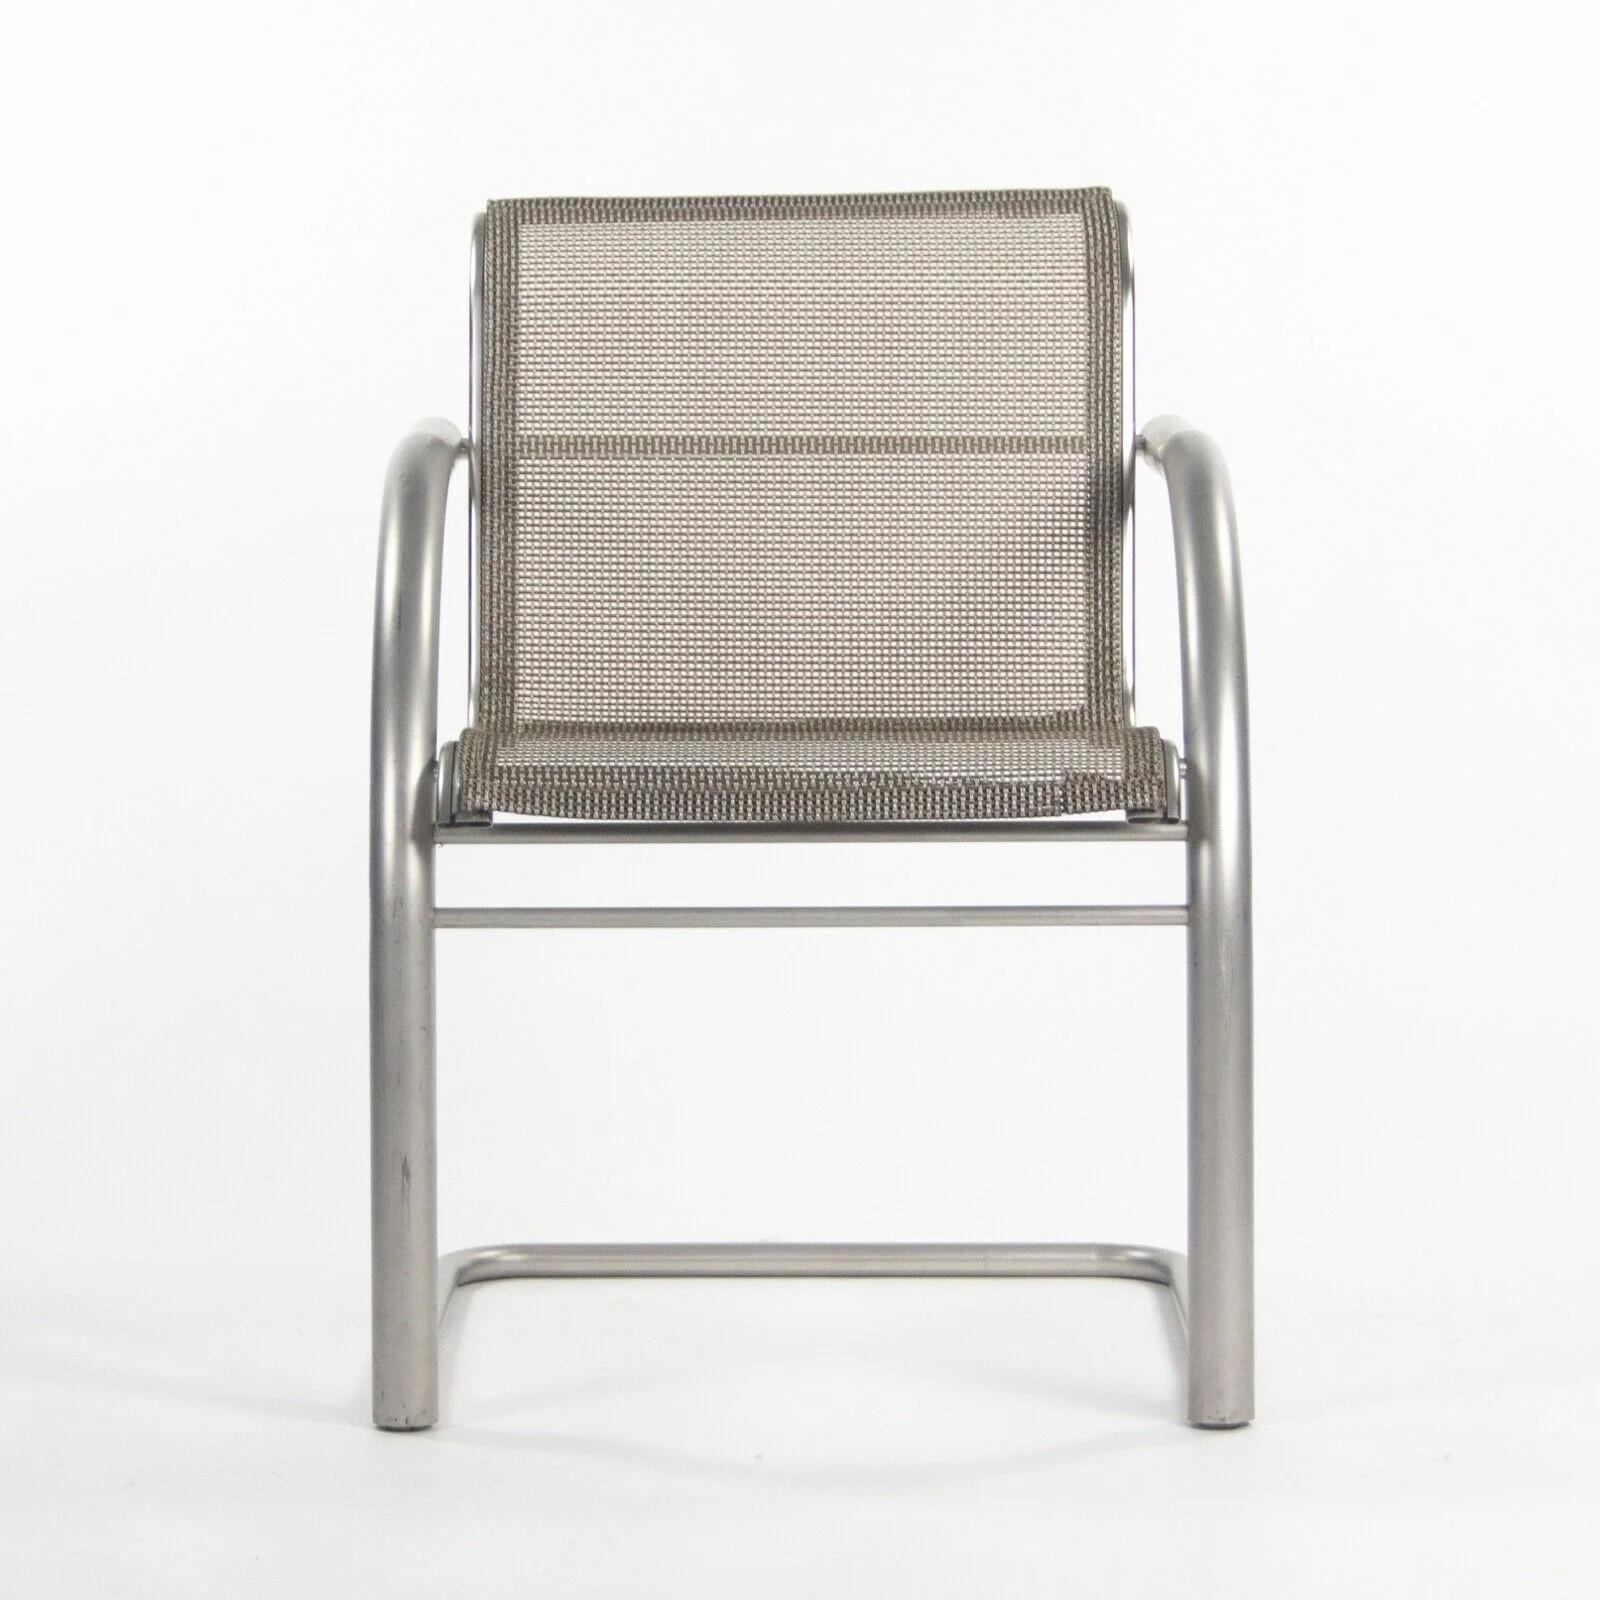 La vente porte sur un prototype de chaise de salle à manger cantilever en acier inoxydable de la Collection Sultz 2002, avec un revêtement en maille. Il s'agit d'un merveilleux et rare exemple de chaise de salle à manger de la collection 2002. Le